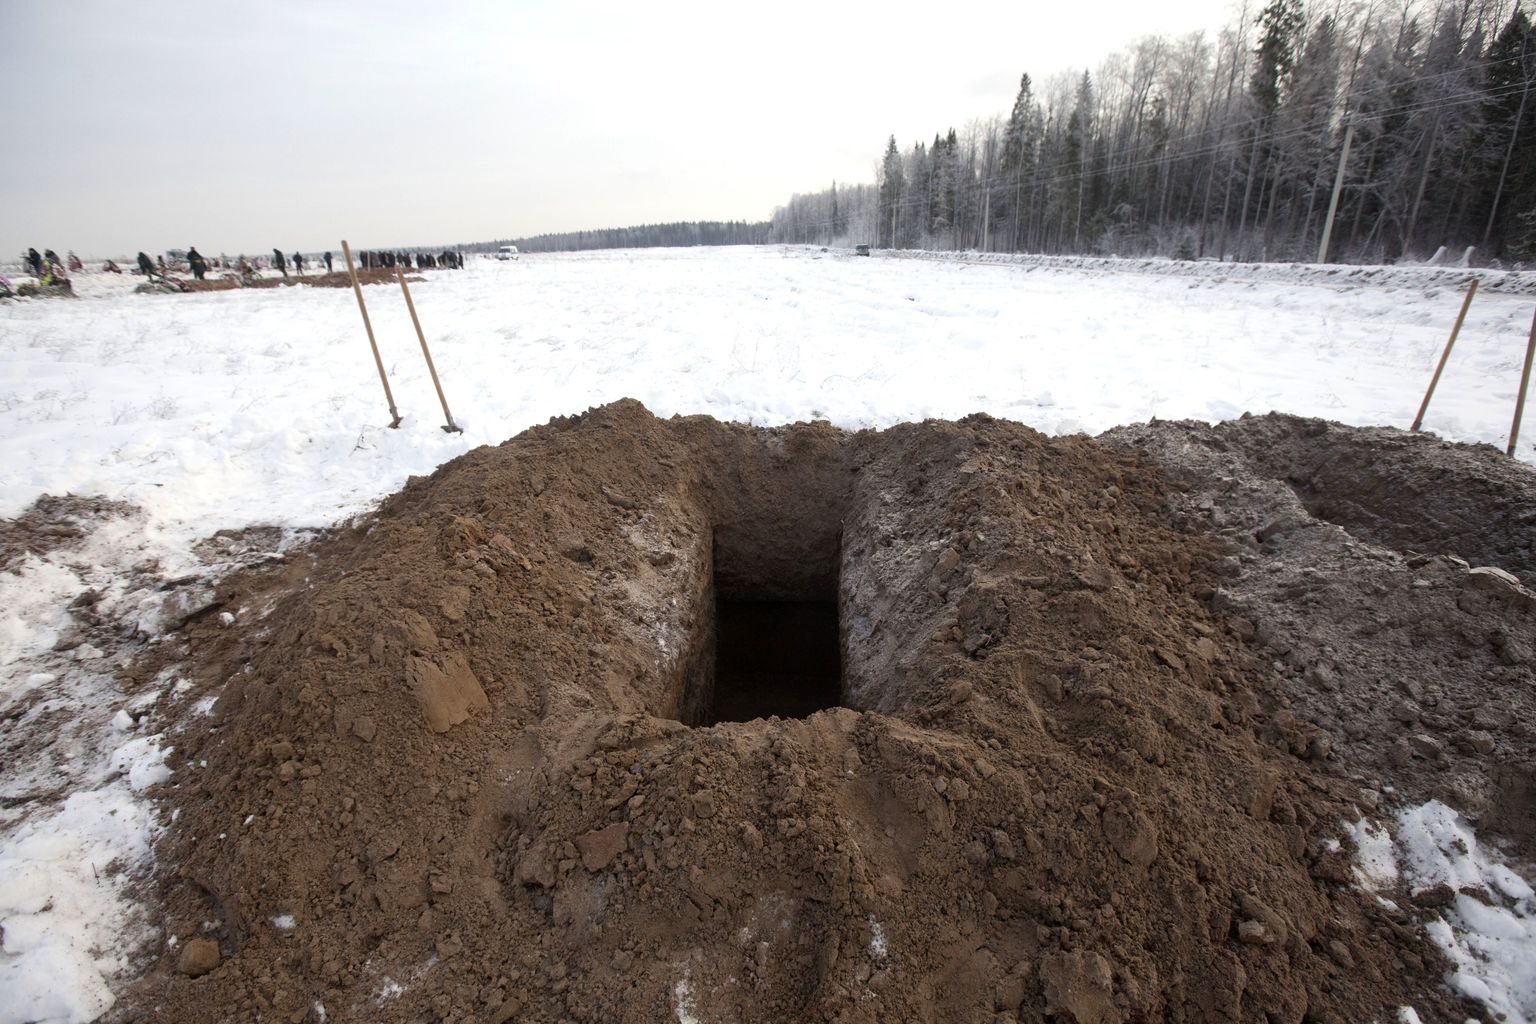 Valmiskaevatud auk ootab järjekordset kirstu Permi tuleõnnetuseohvri surnukehaga.